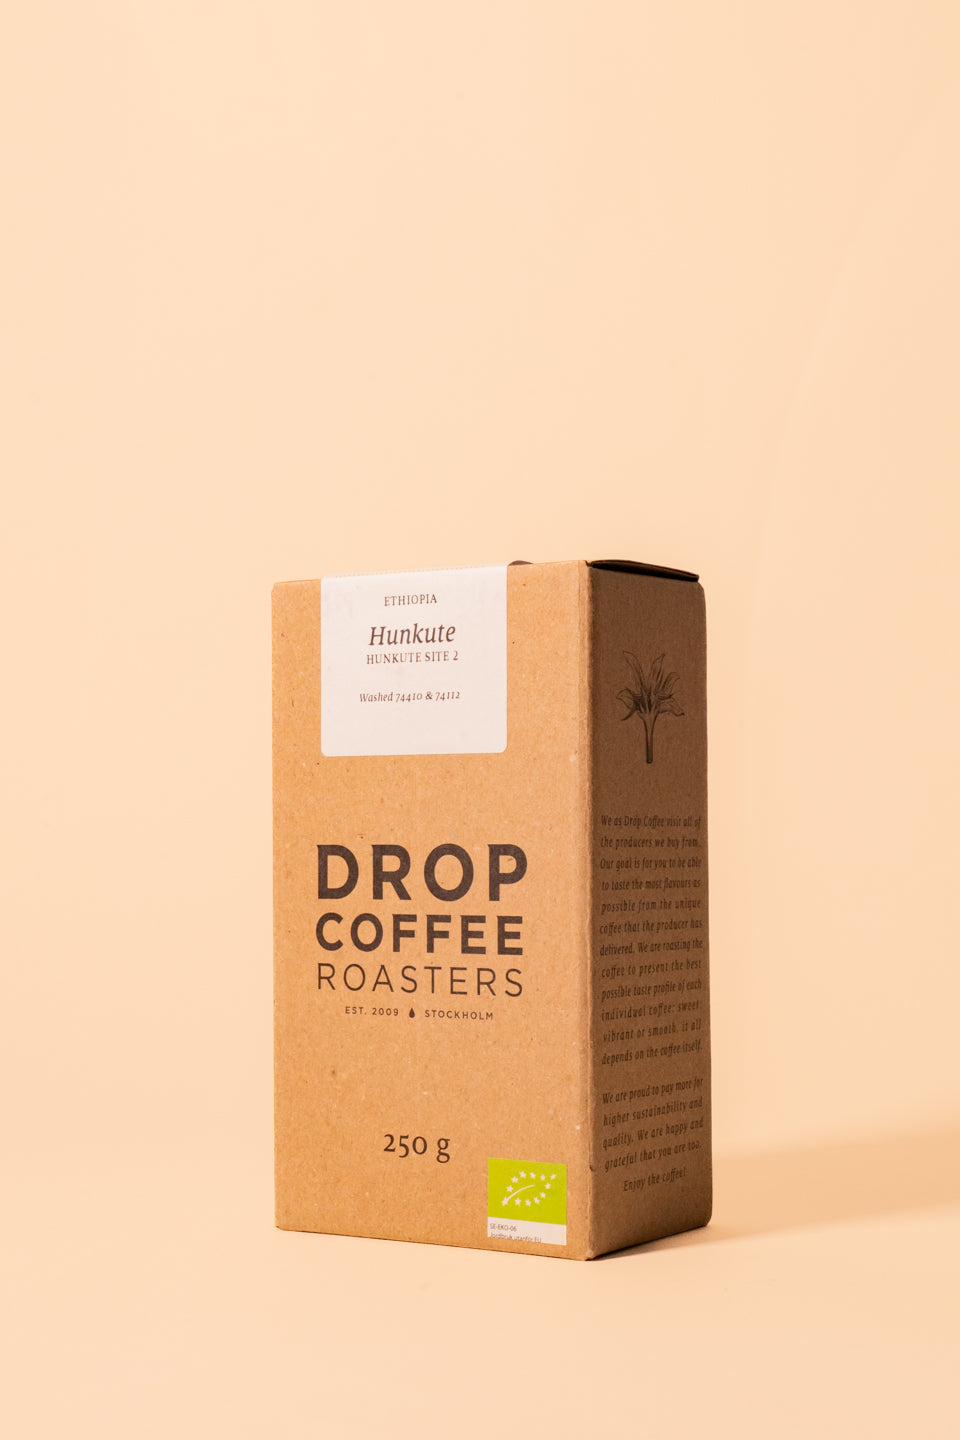 Drop Coffee Roasters | Hunkute, Ethiopia - ORGANIC 250g